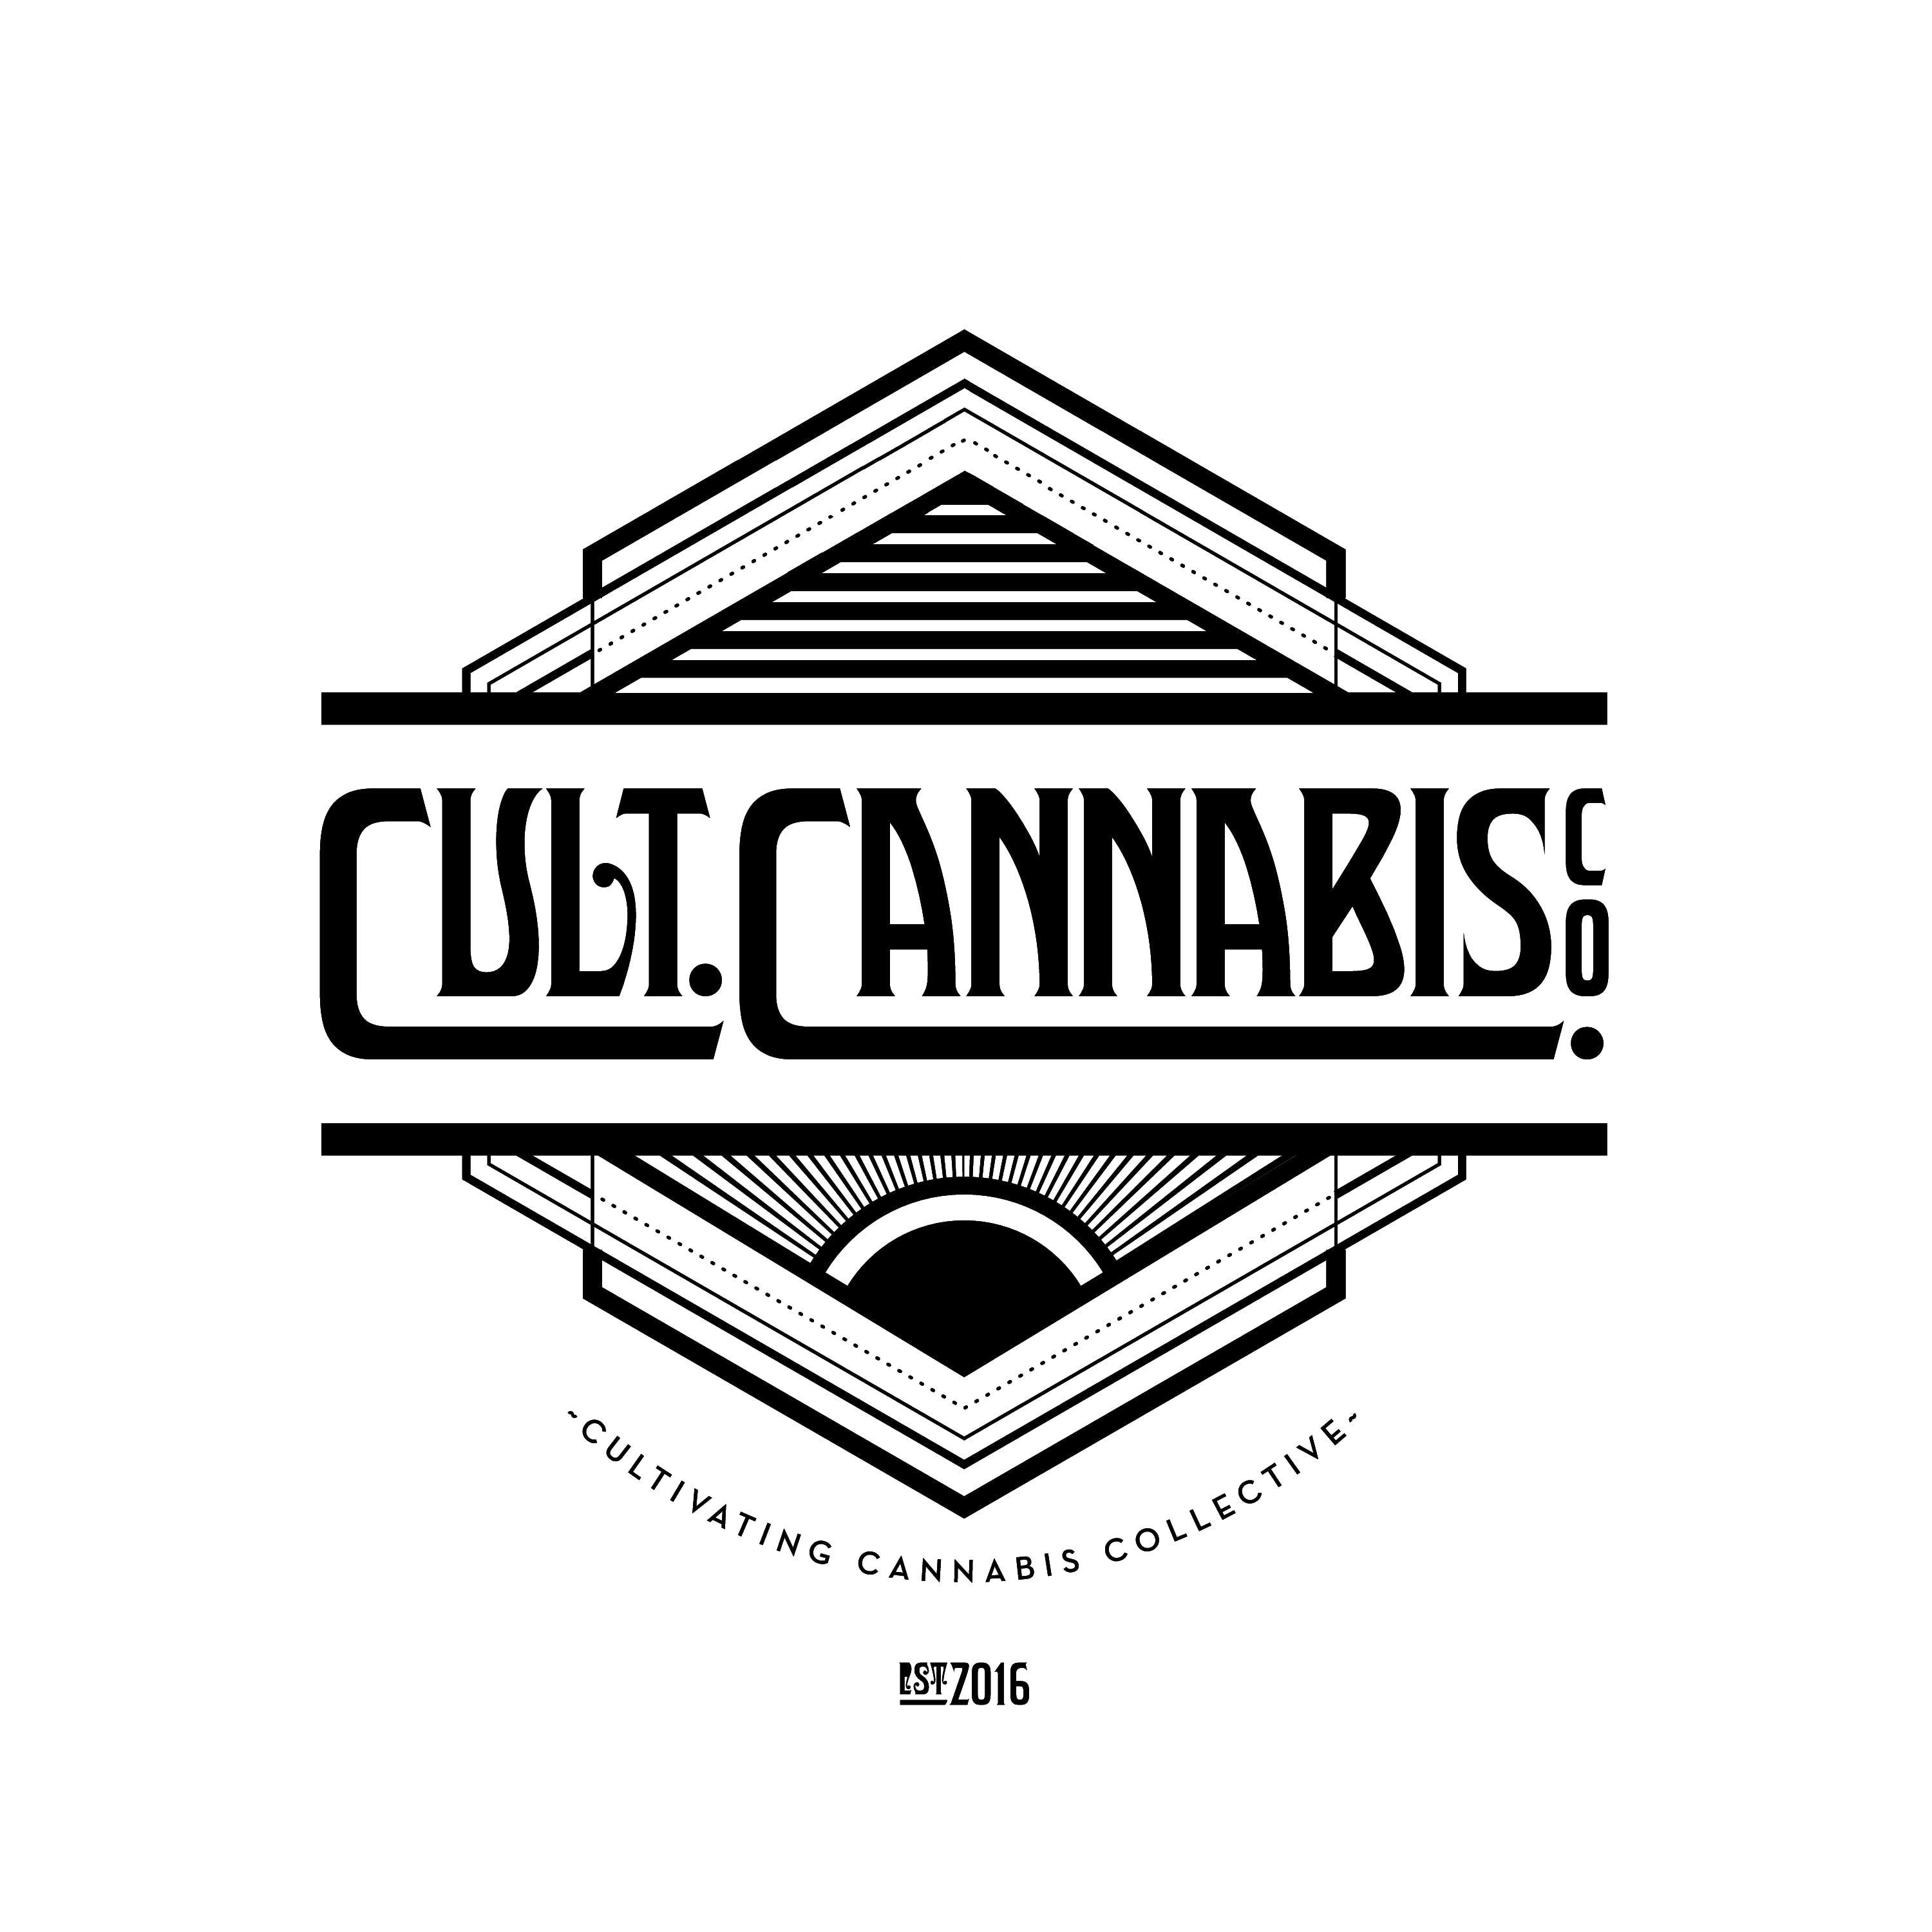 Cultivating Cannabis Collectives - Medical Marijuana Doctors - Cannabizme.com